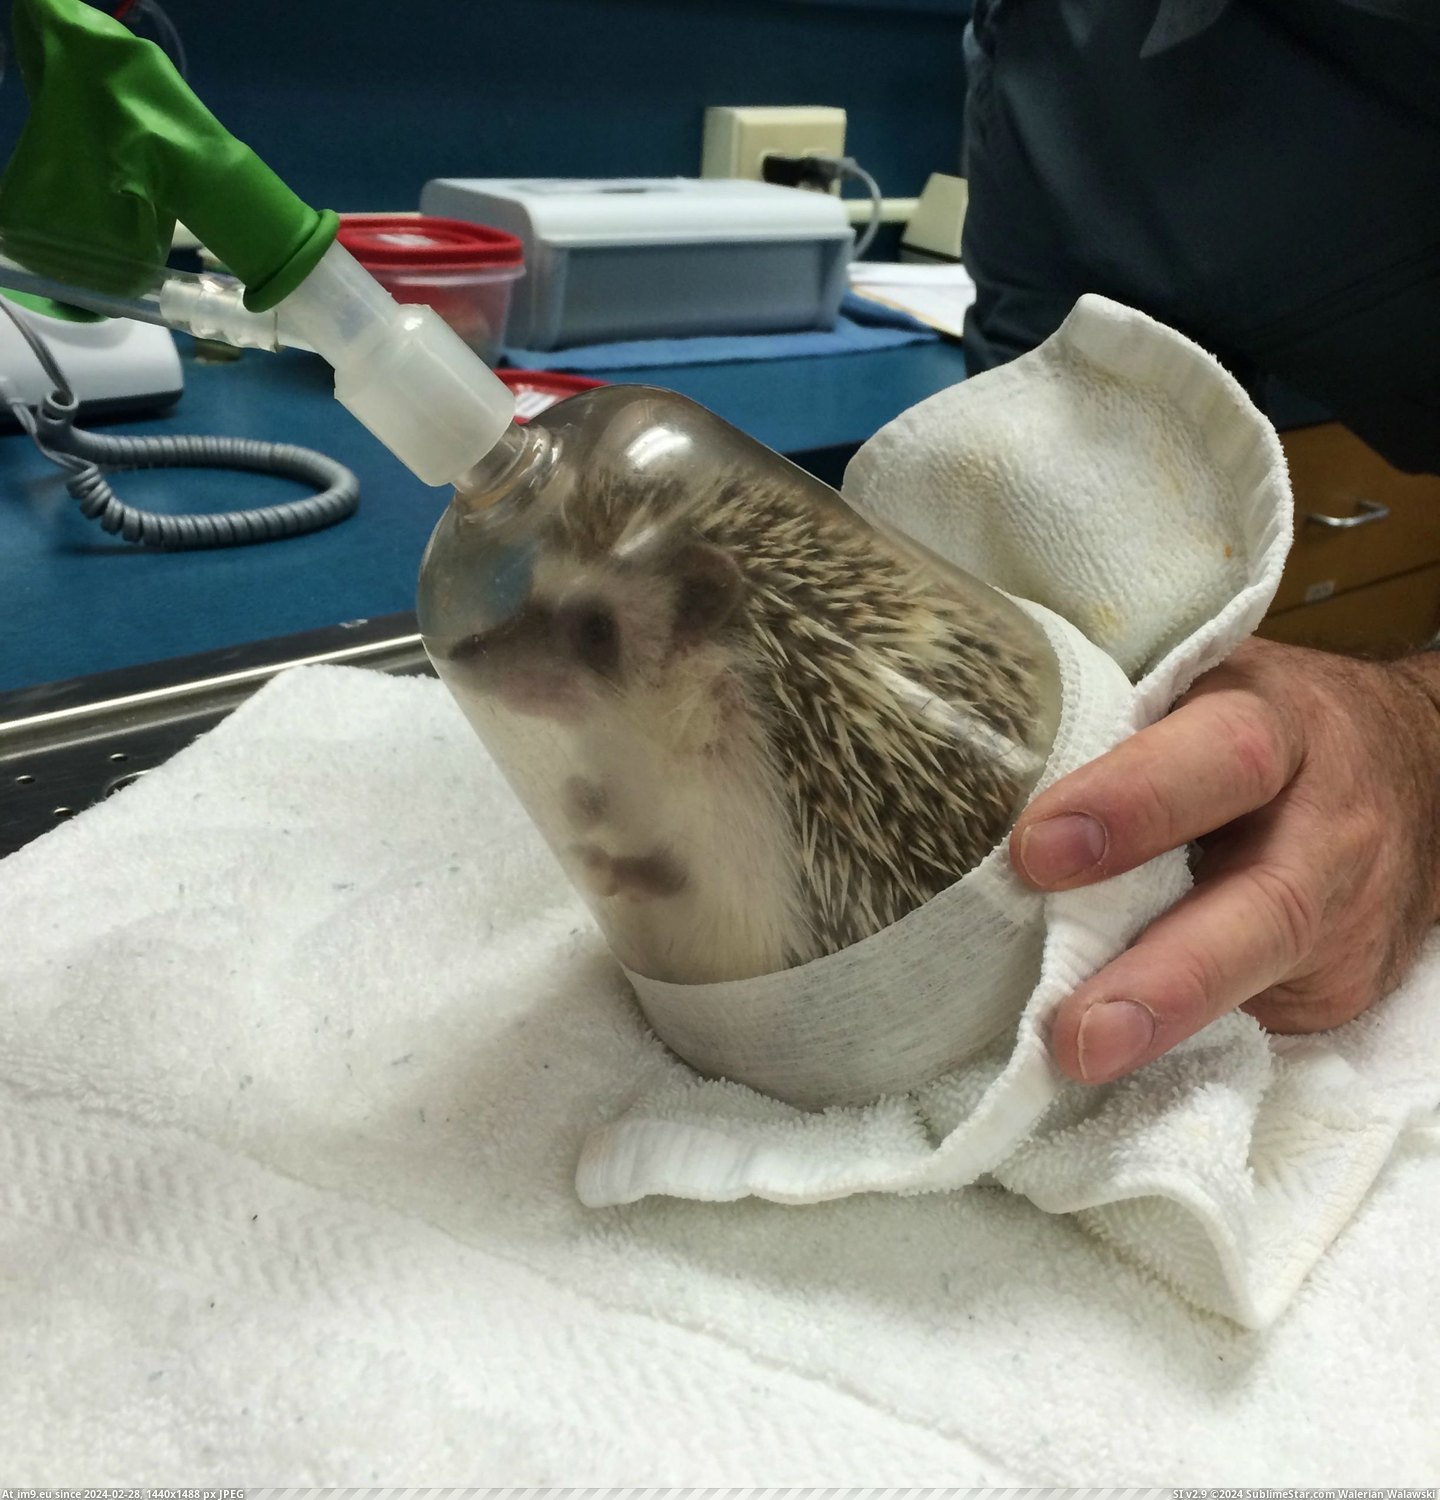 #Album #Oral #Anesthesia #Hedgehog #Exam [Aww] My hedgehog just had anesthesia for an oral exam [album] 5 Pic. (Изображение из альбом My r/AWW favs))